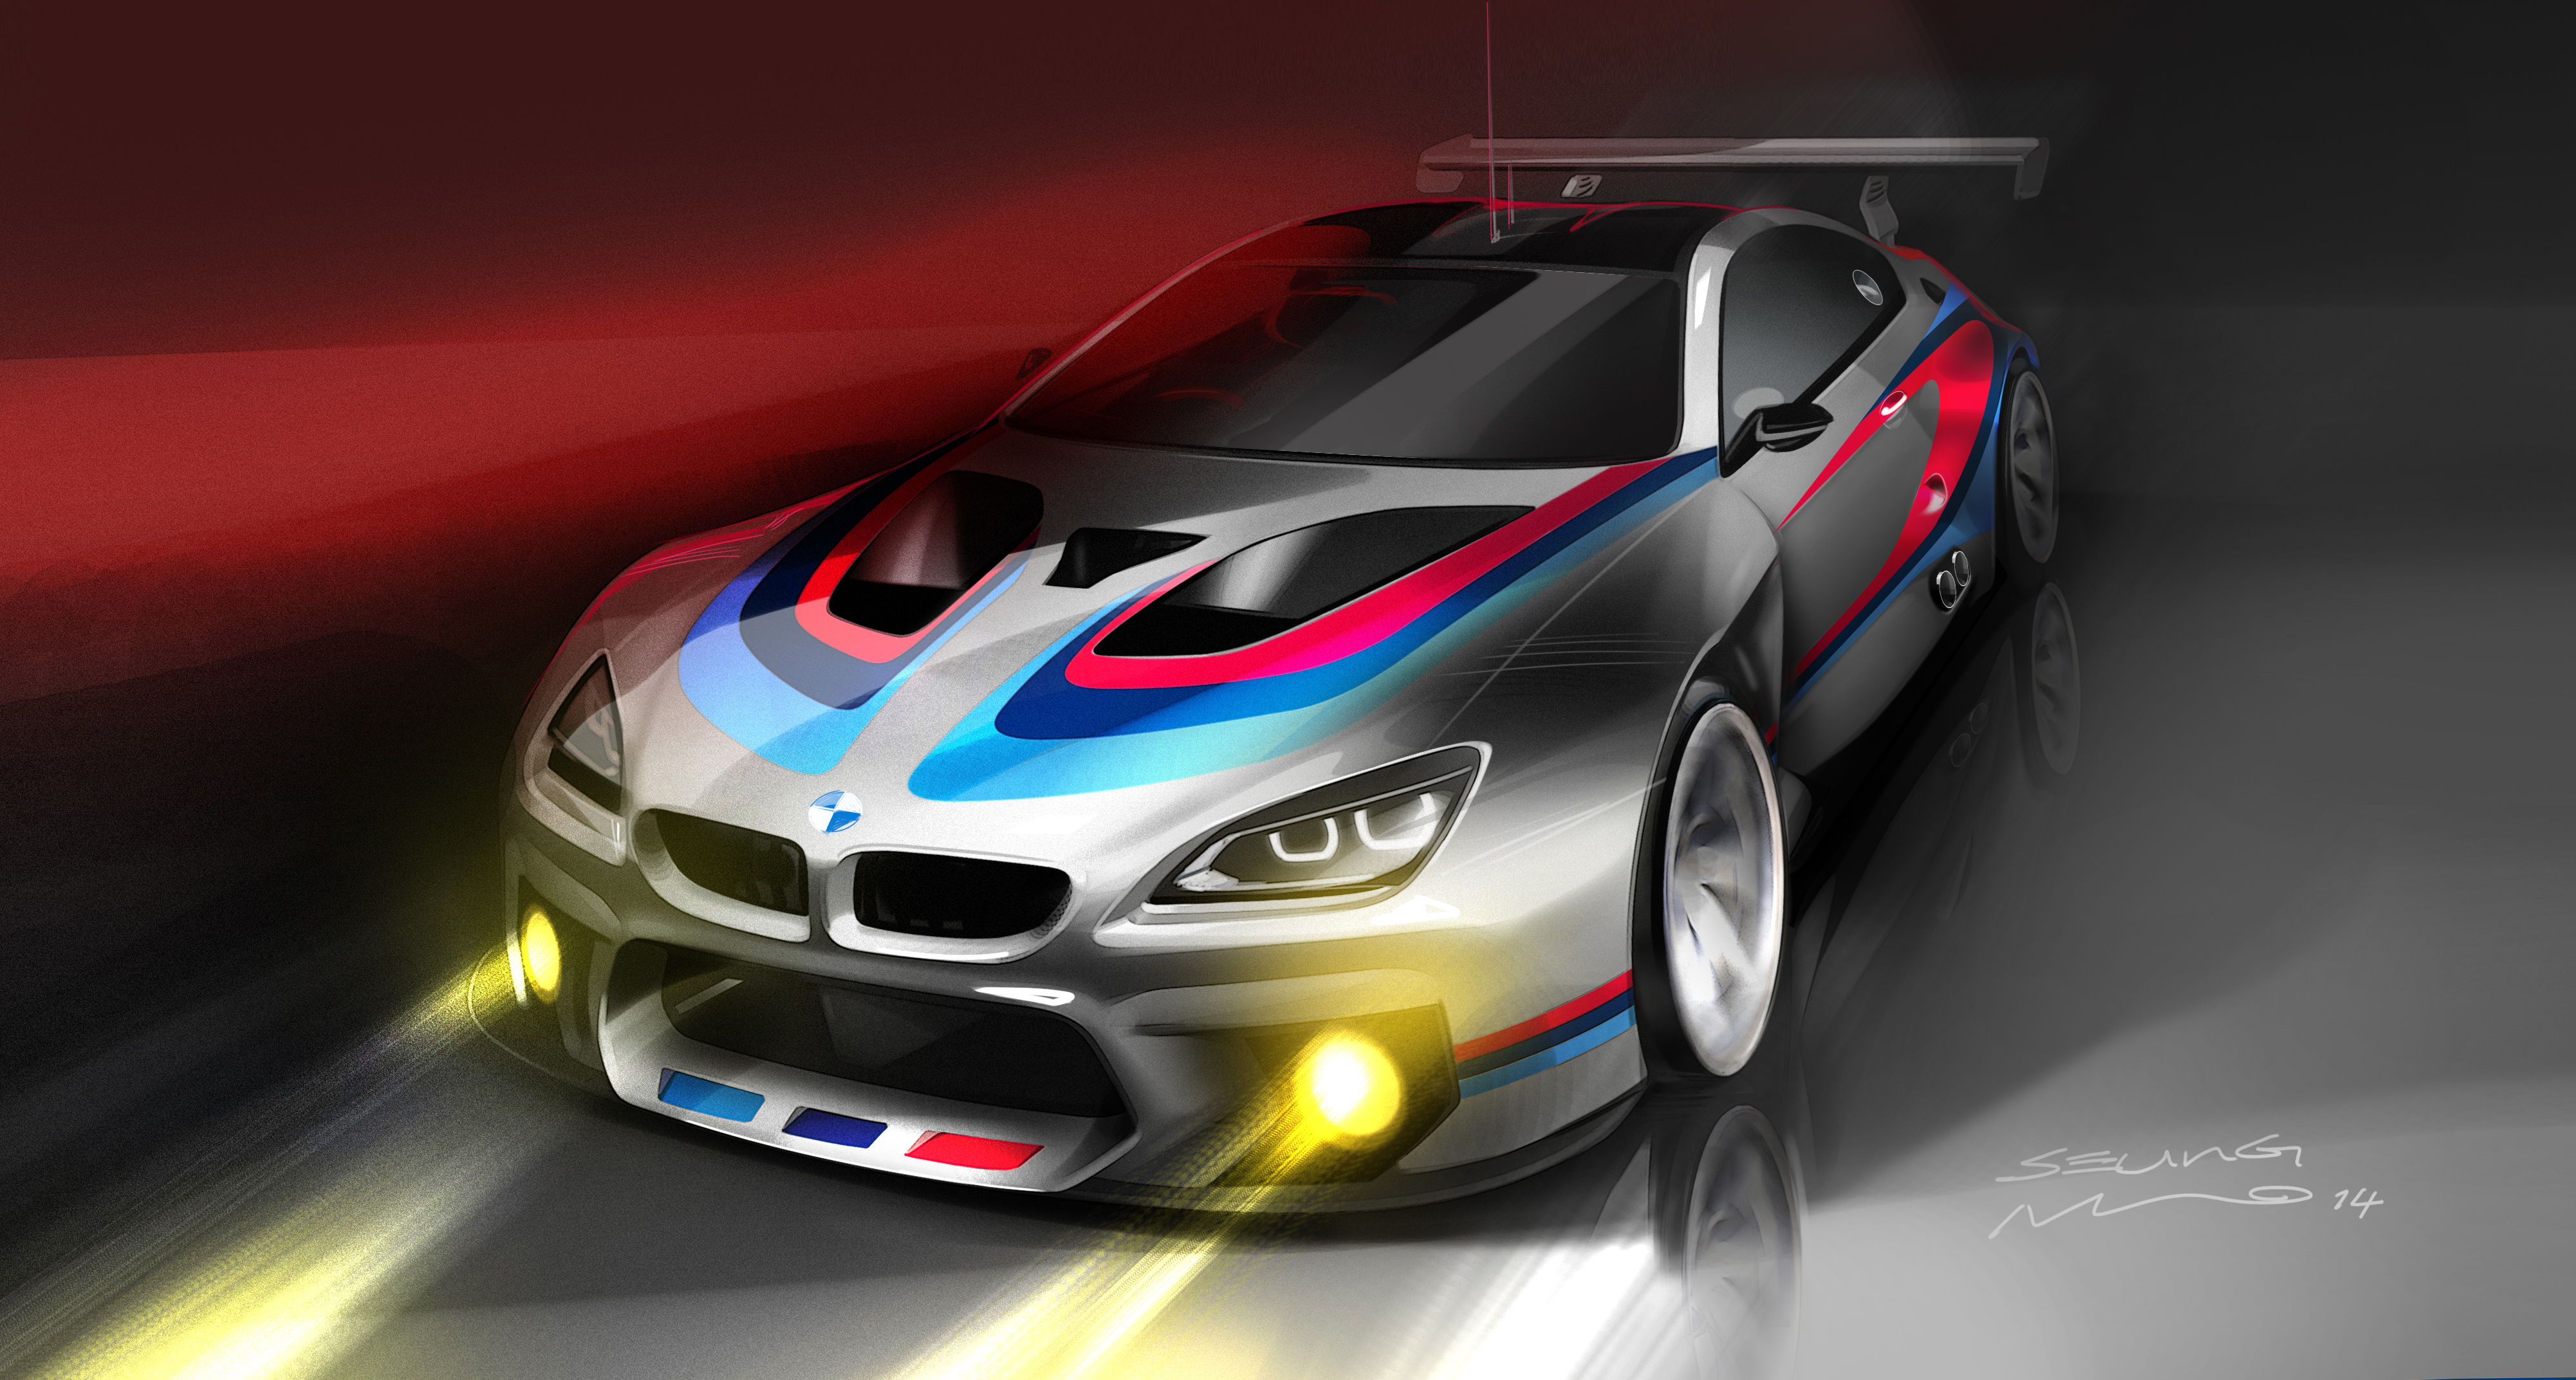 Гоночное купе BMW M6 GT3 дебютирует в рамках Франкфуртского автосалона